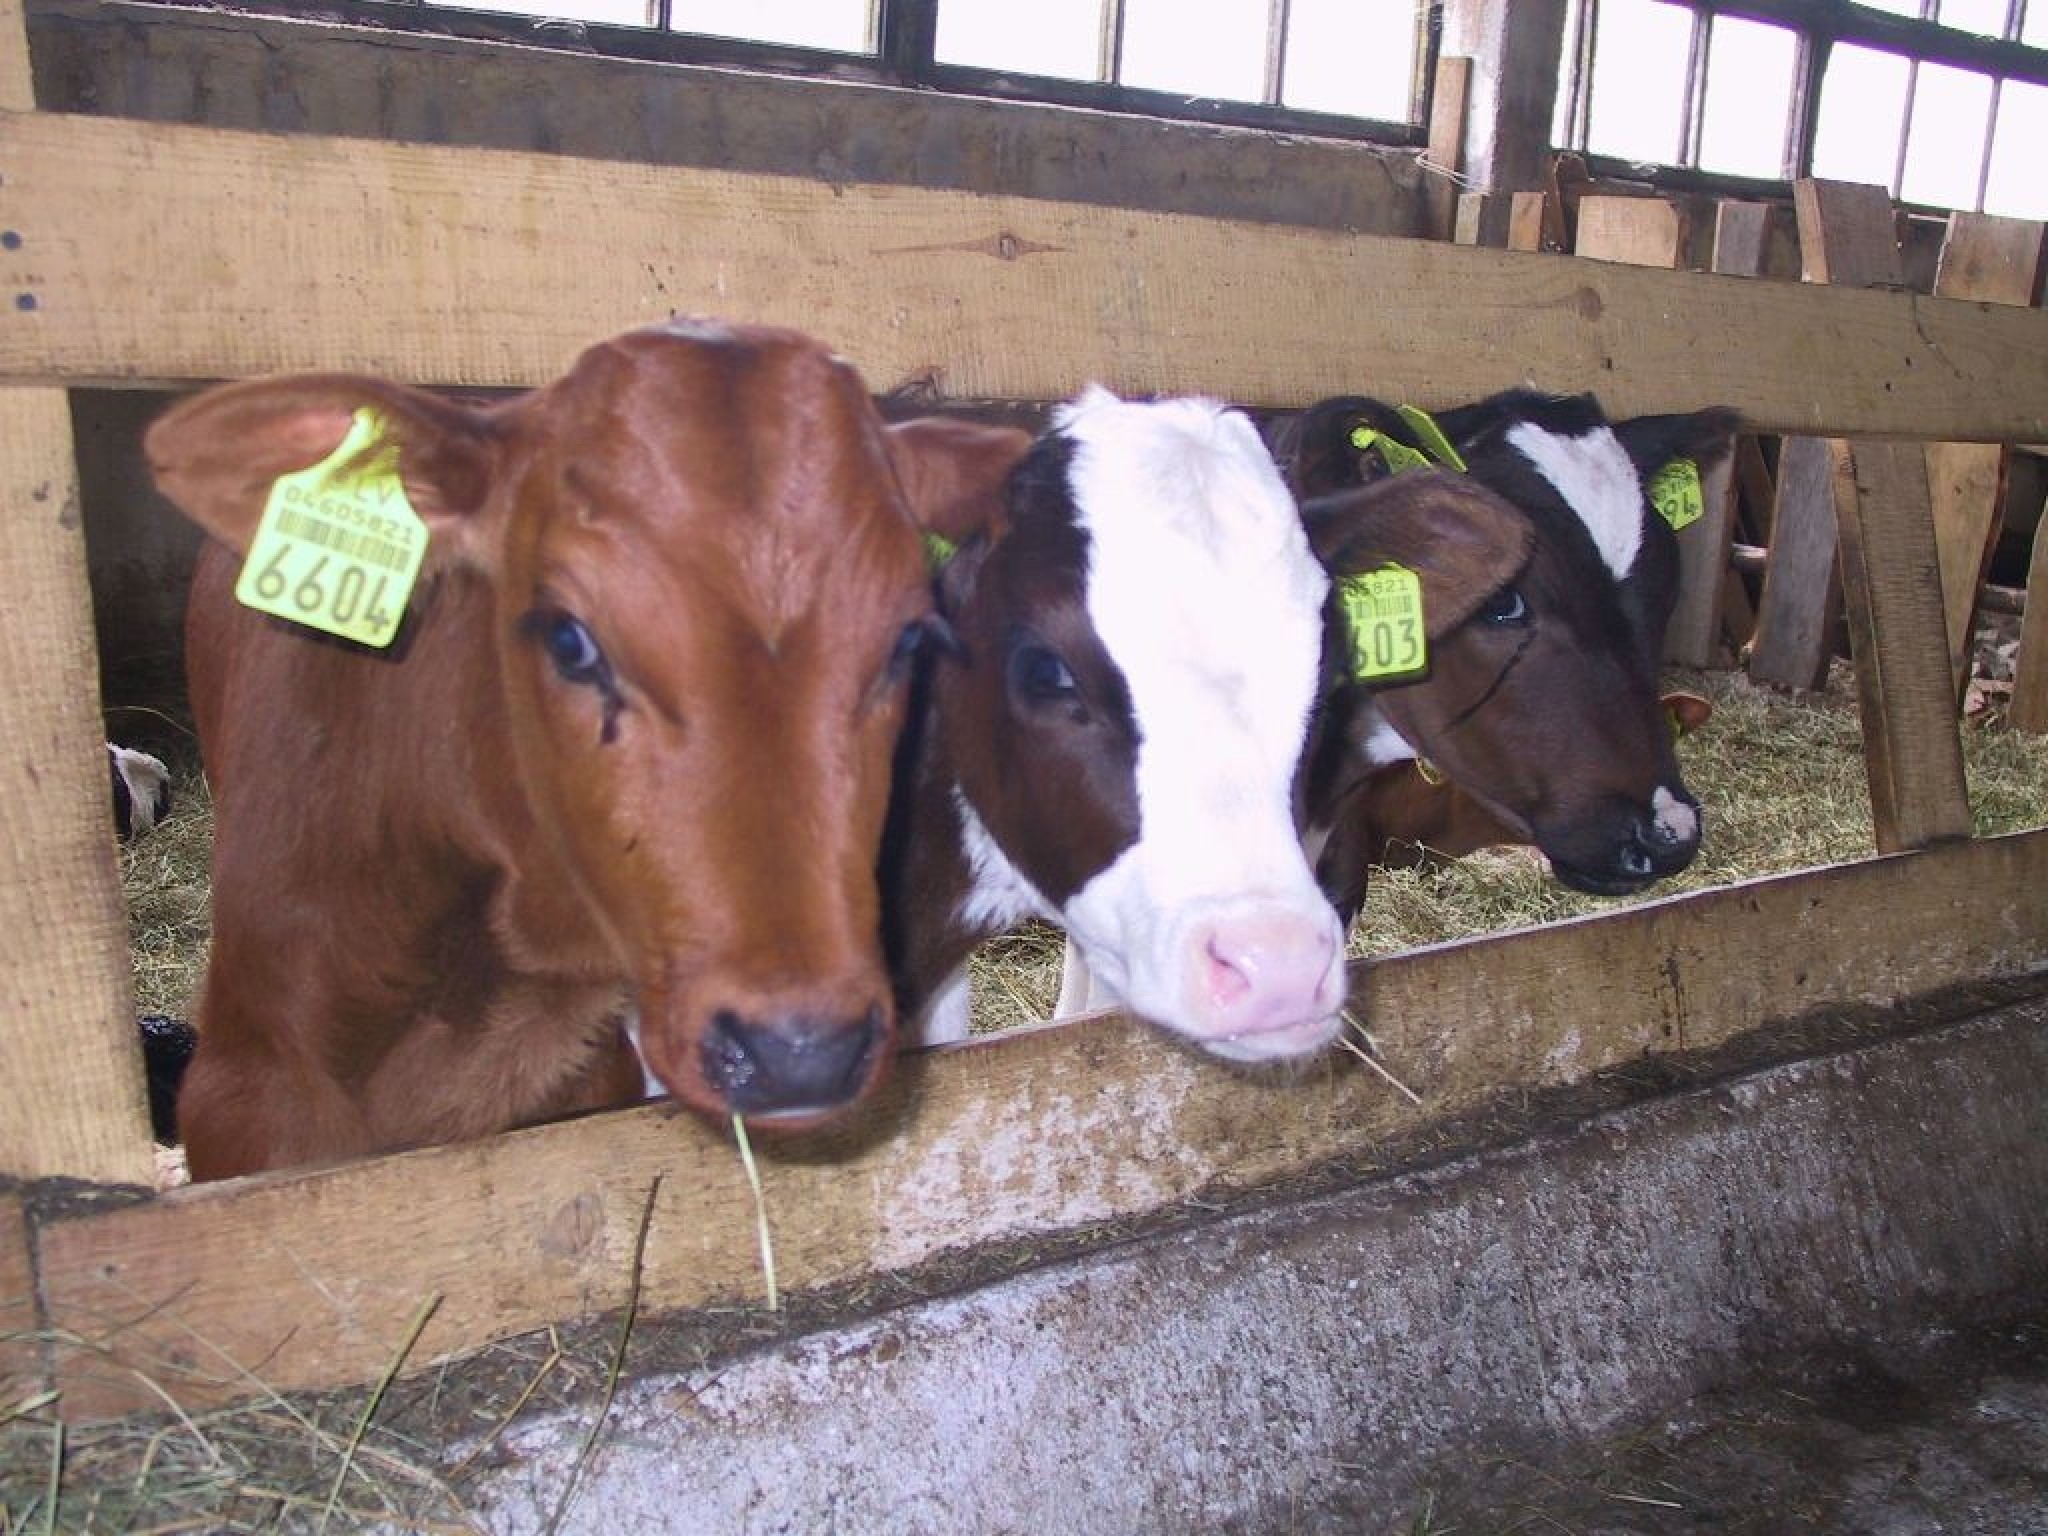 Piena lopkopības nozarē draud krīze